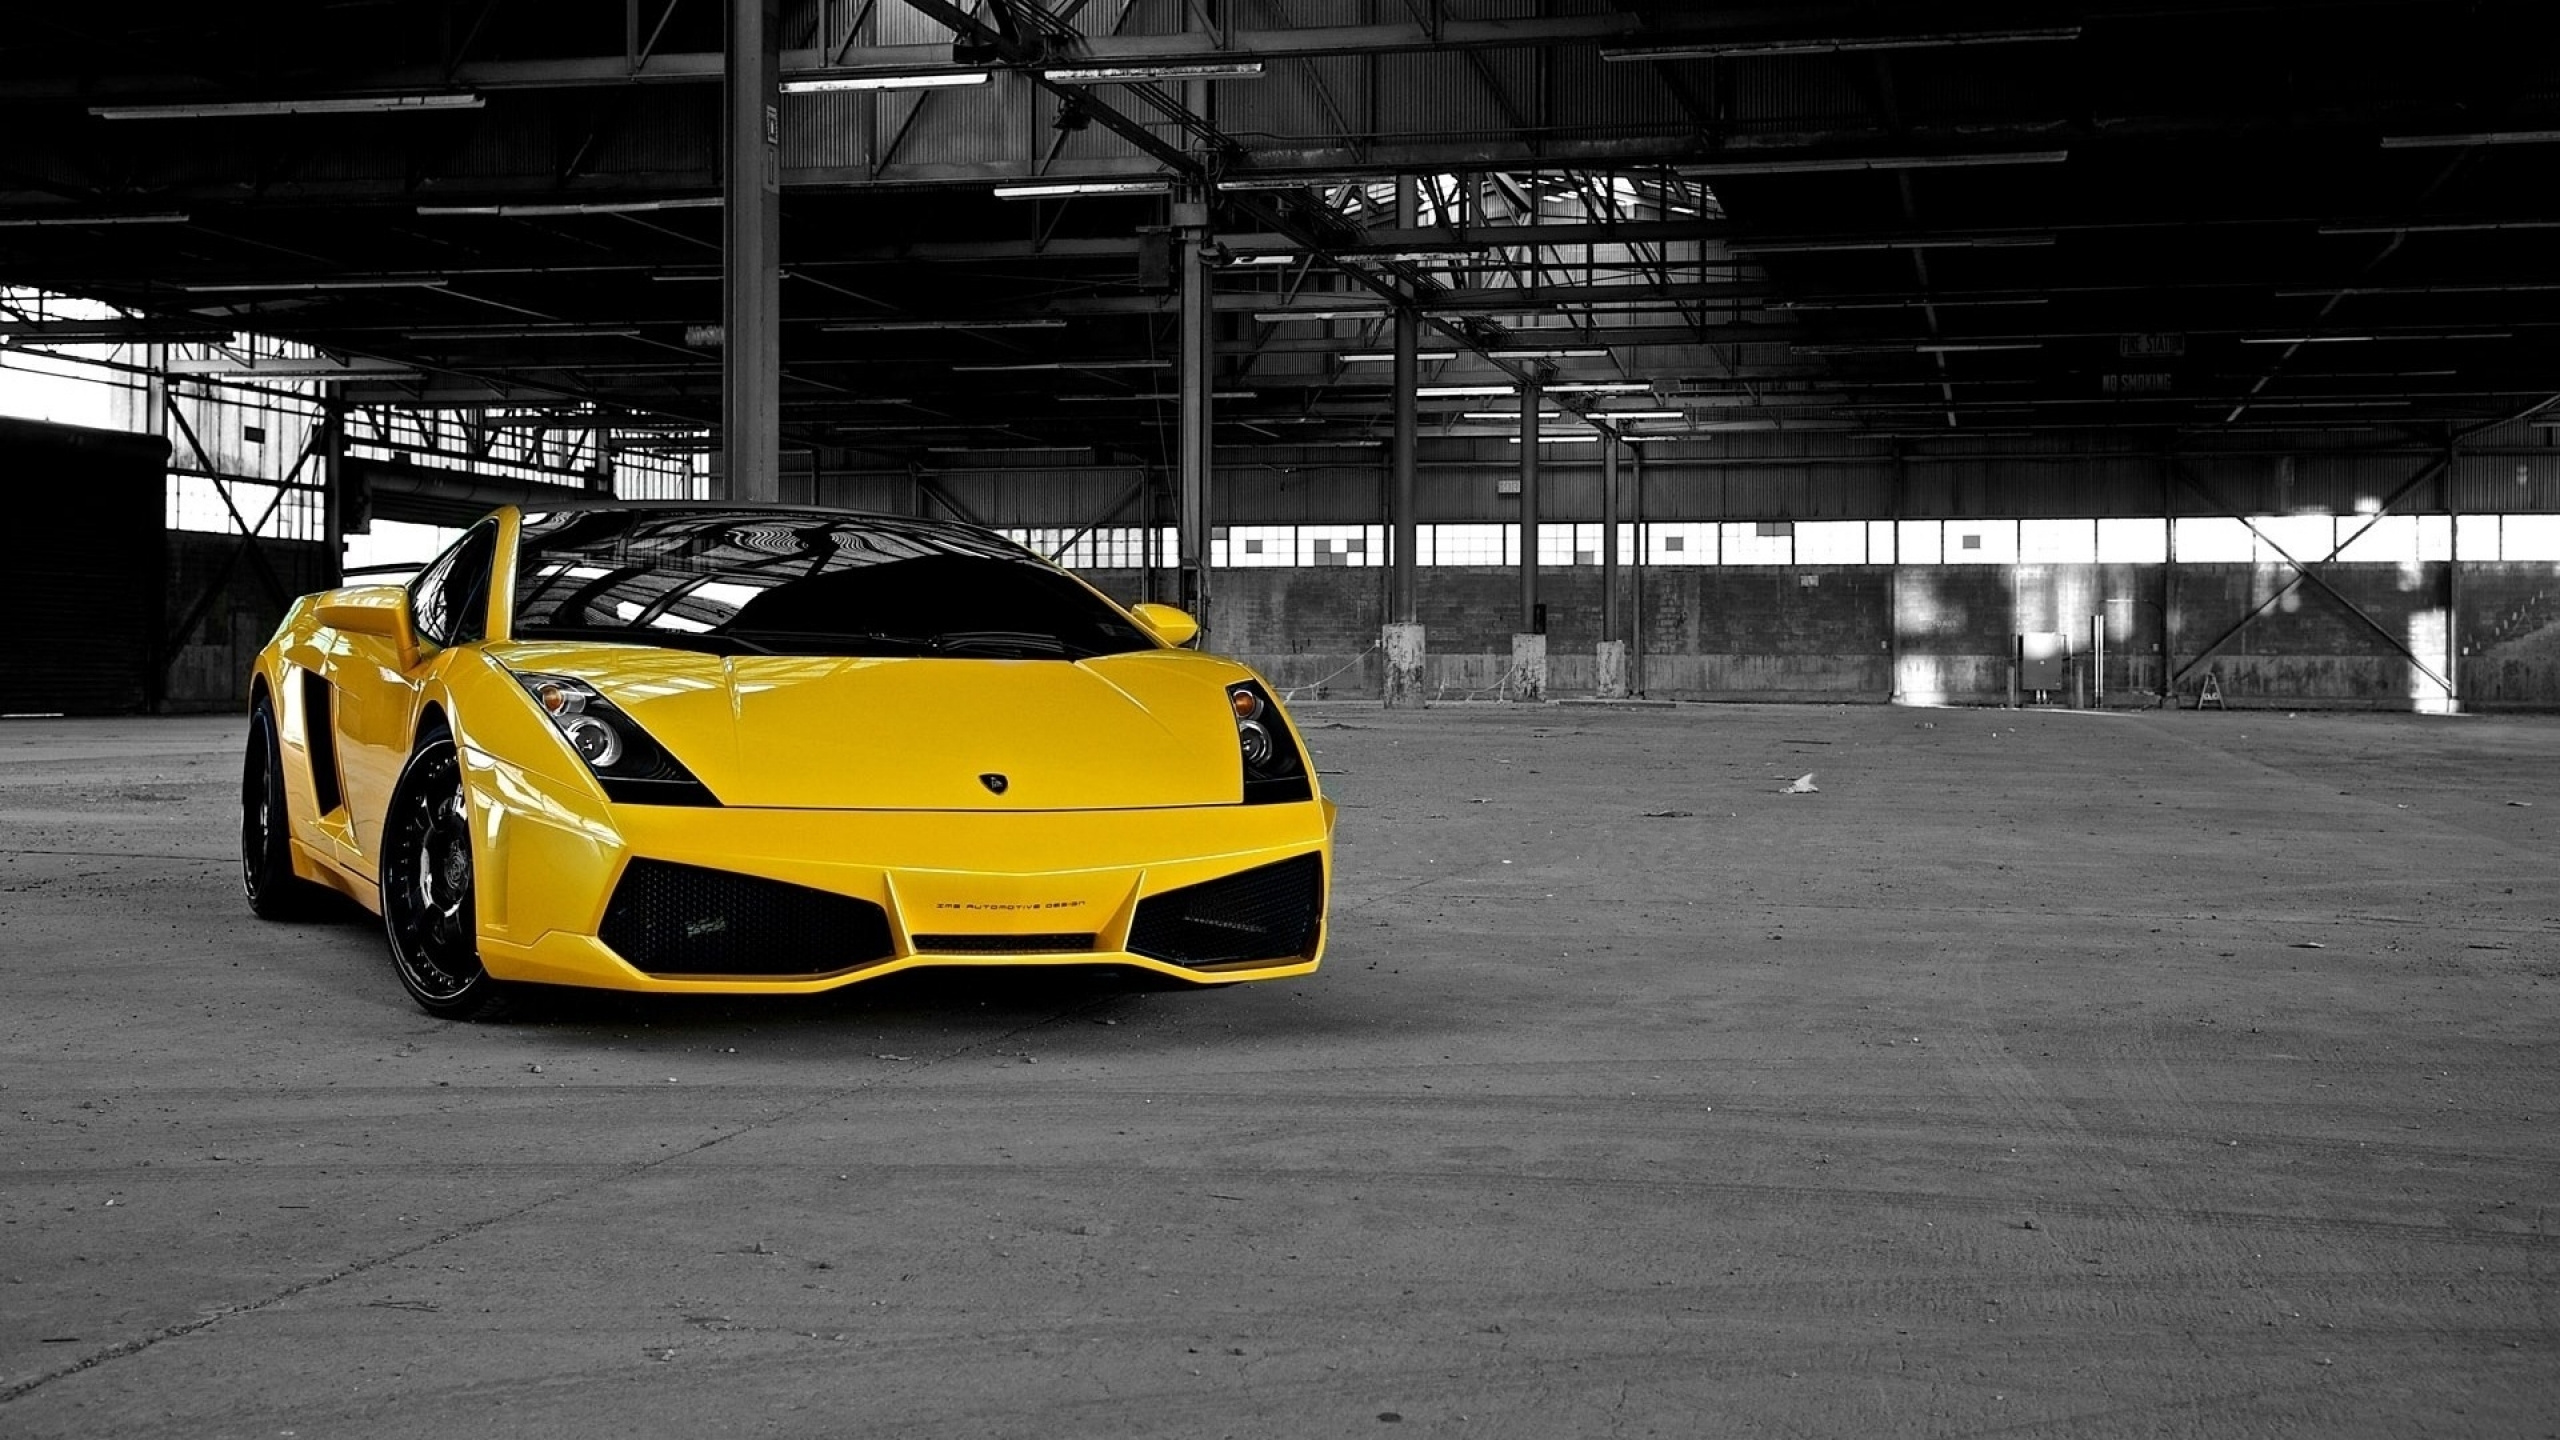 Lamborghini Aventador Amarillo Estacionado en el Estacionamiento. Wallpaper in 2560x1440 Resolution